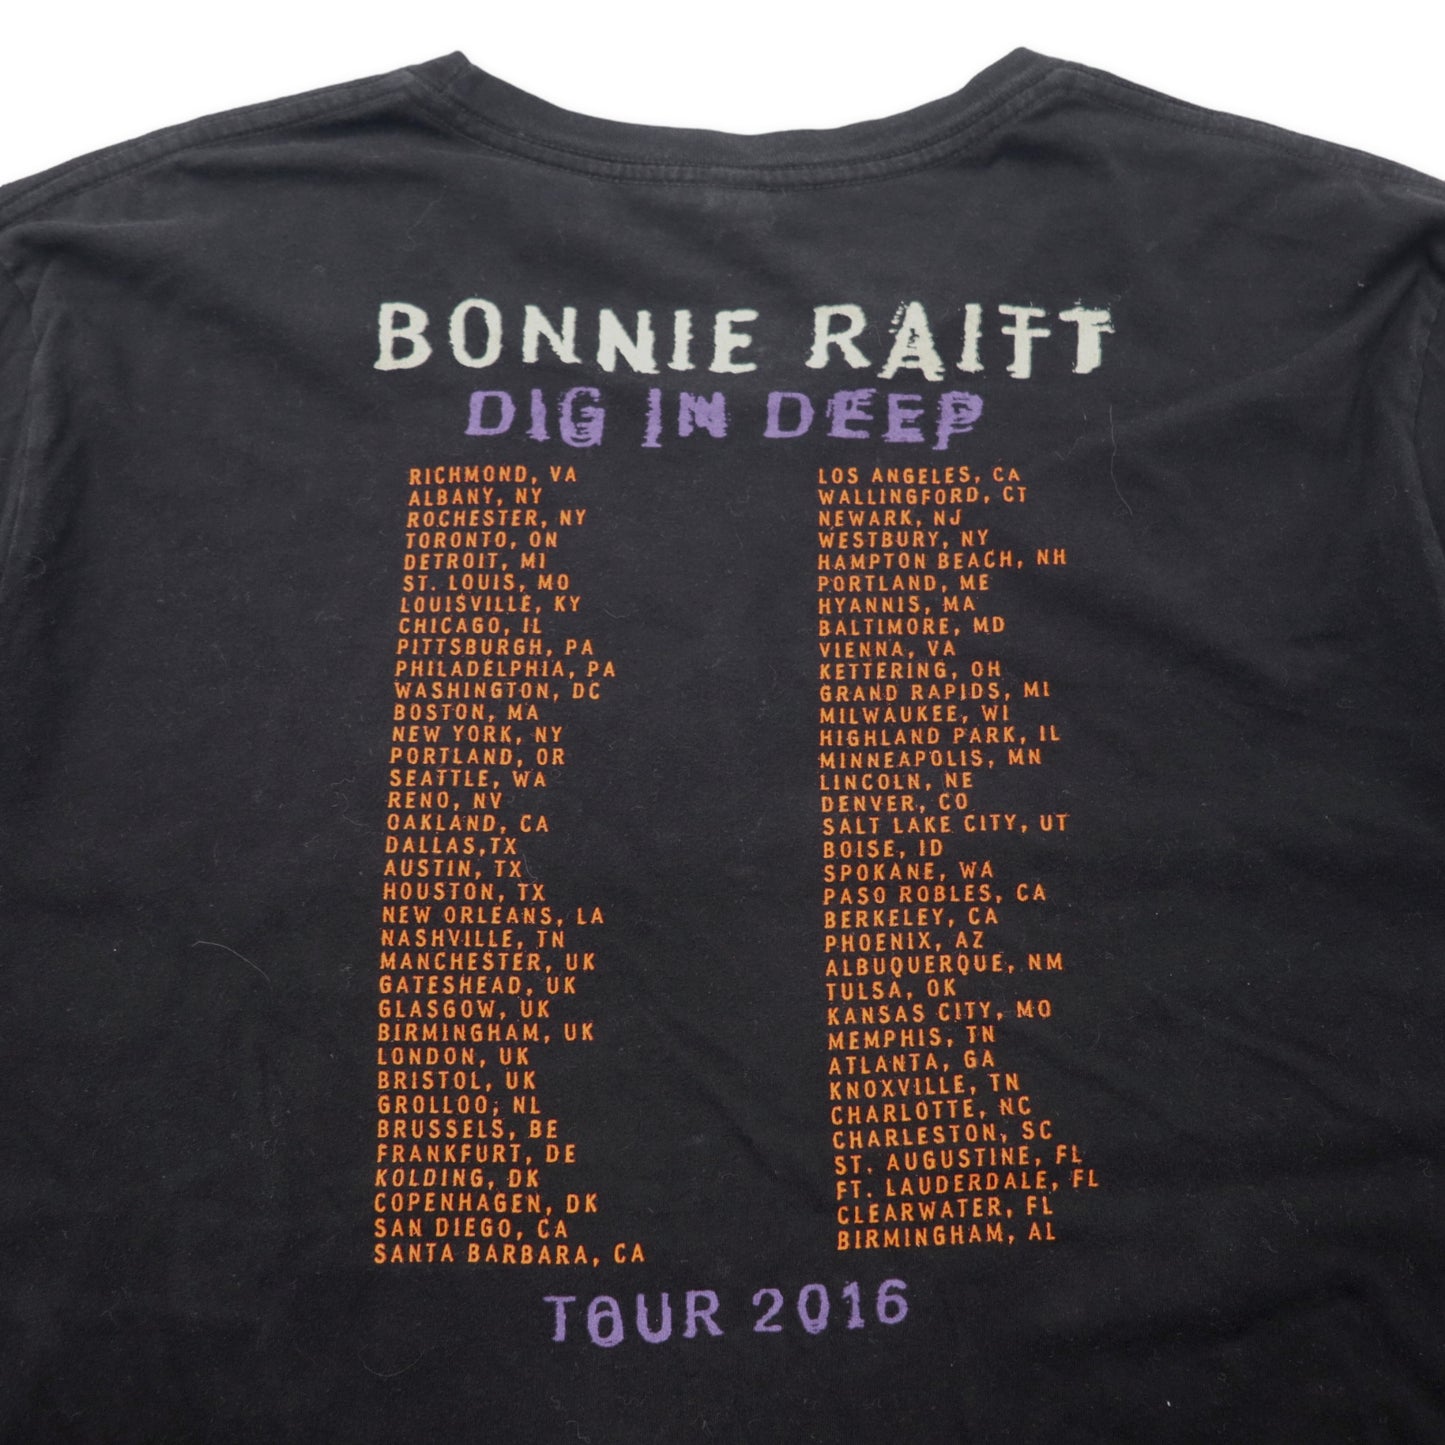 USA製 BONNIE RAITT バンドTシャツ 2XL ブラック コットン CANVAS ビッグサイズ